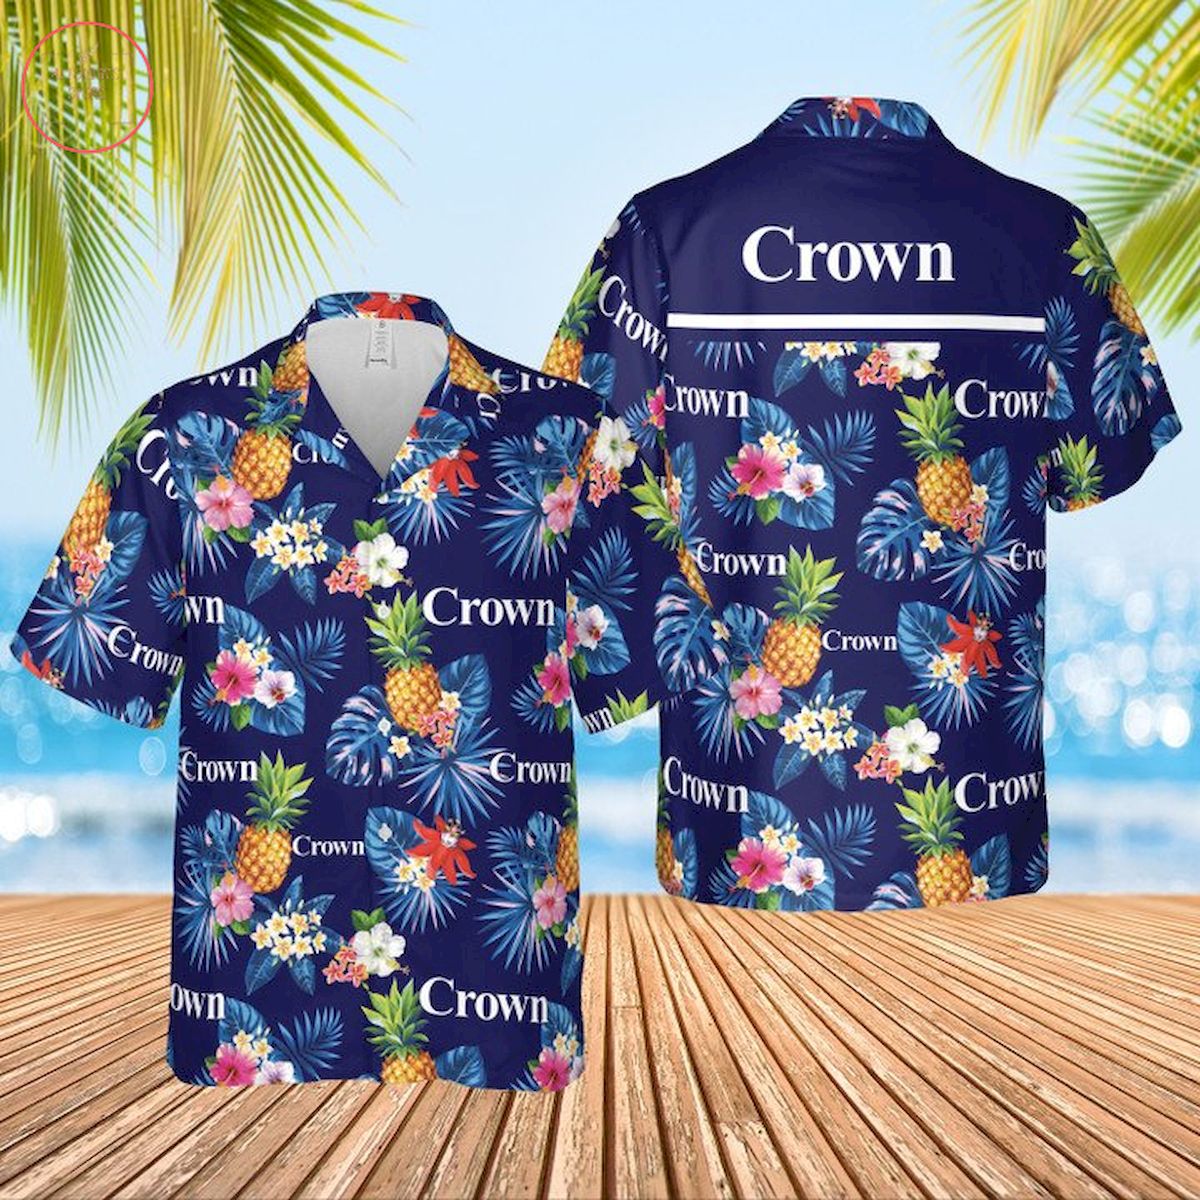 Crown Condoms Hawaiian Shirt and Shorts